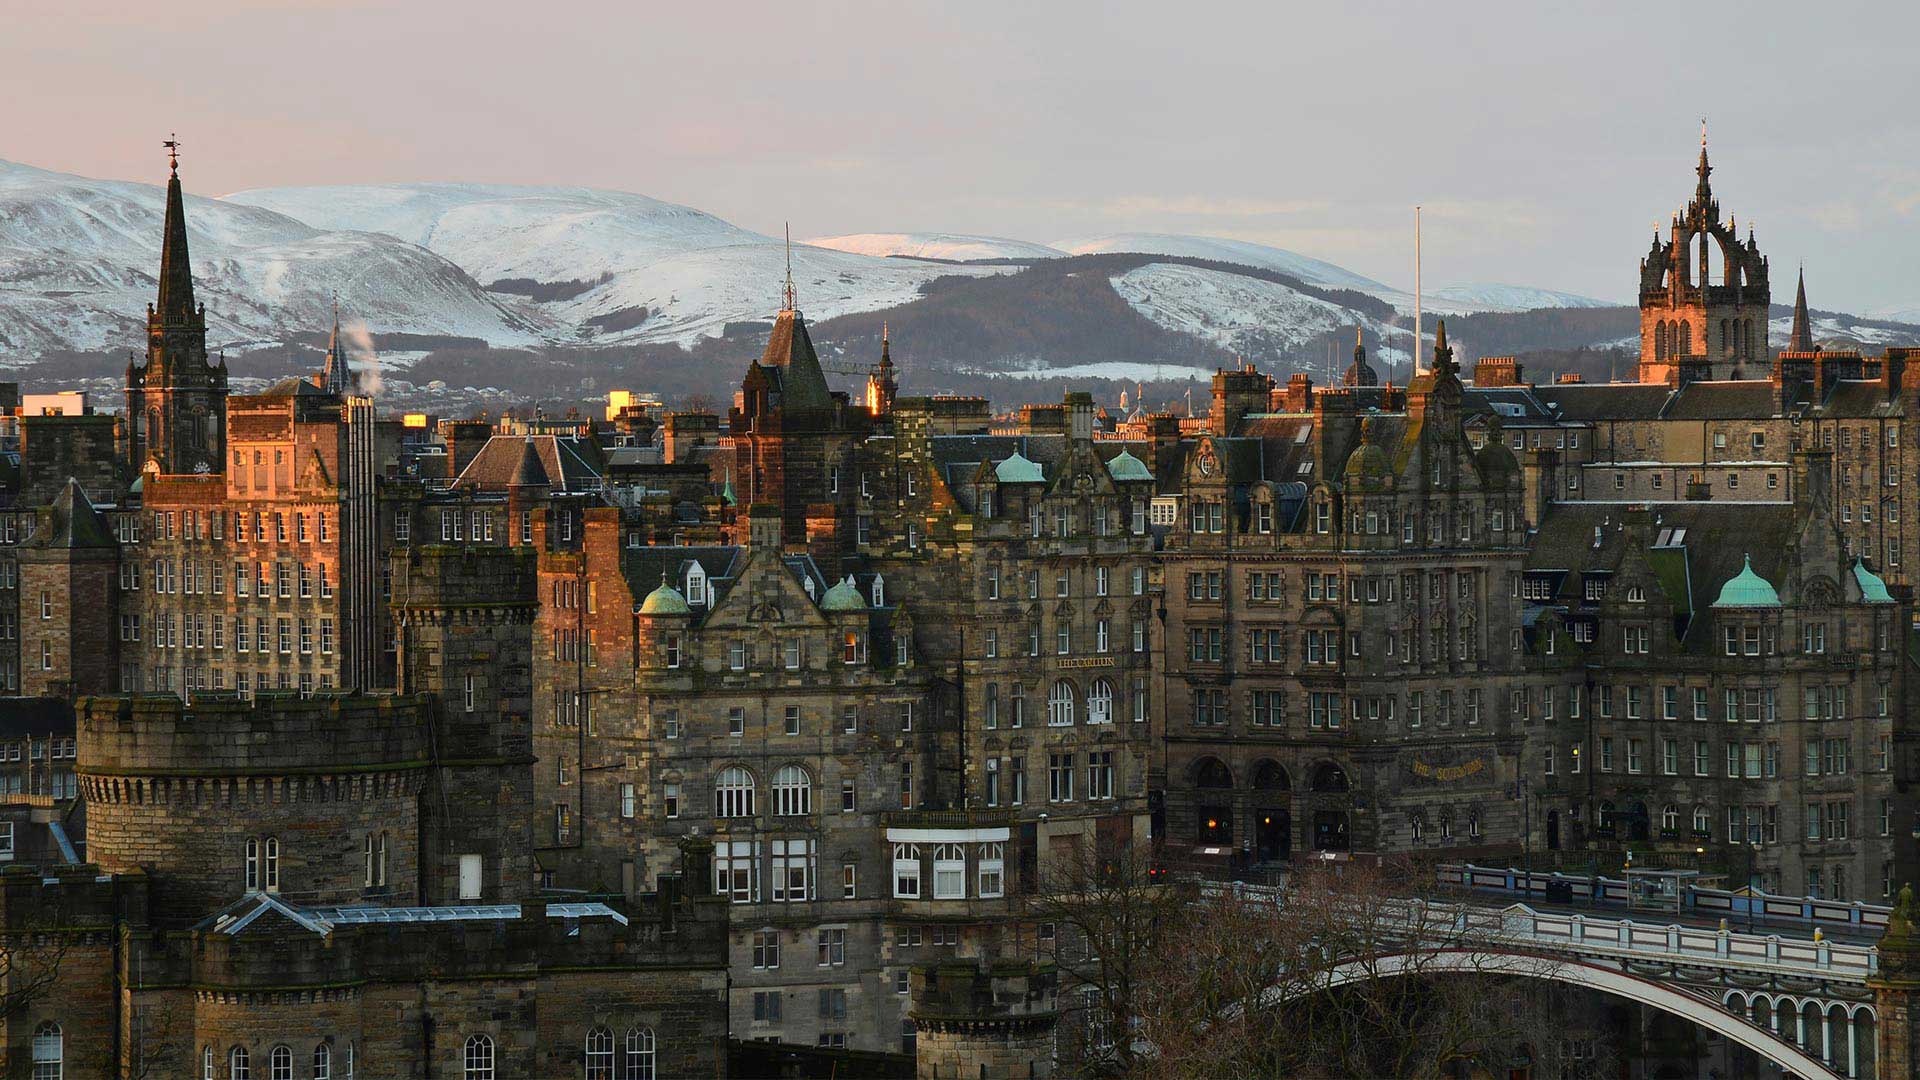 Edinburgh winter, 4K HD wallpapers, Top free backgrounds, Snowy scenes, 1920x1080 Full HD Desktop